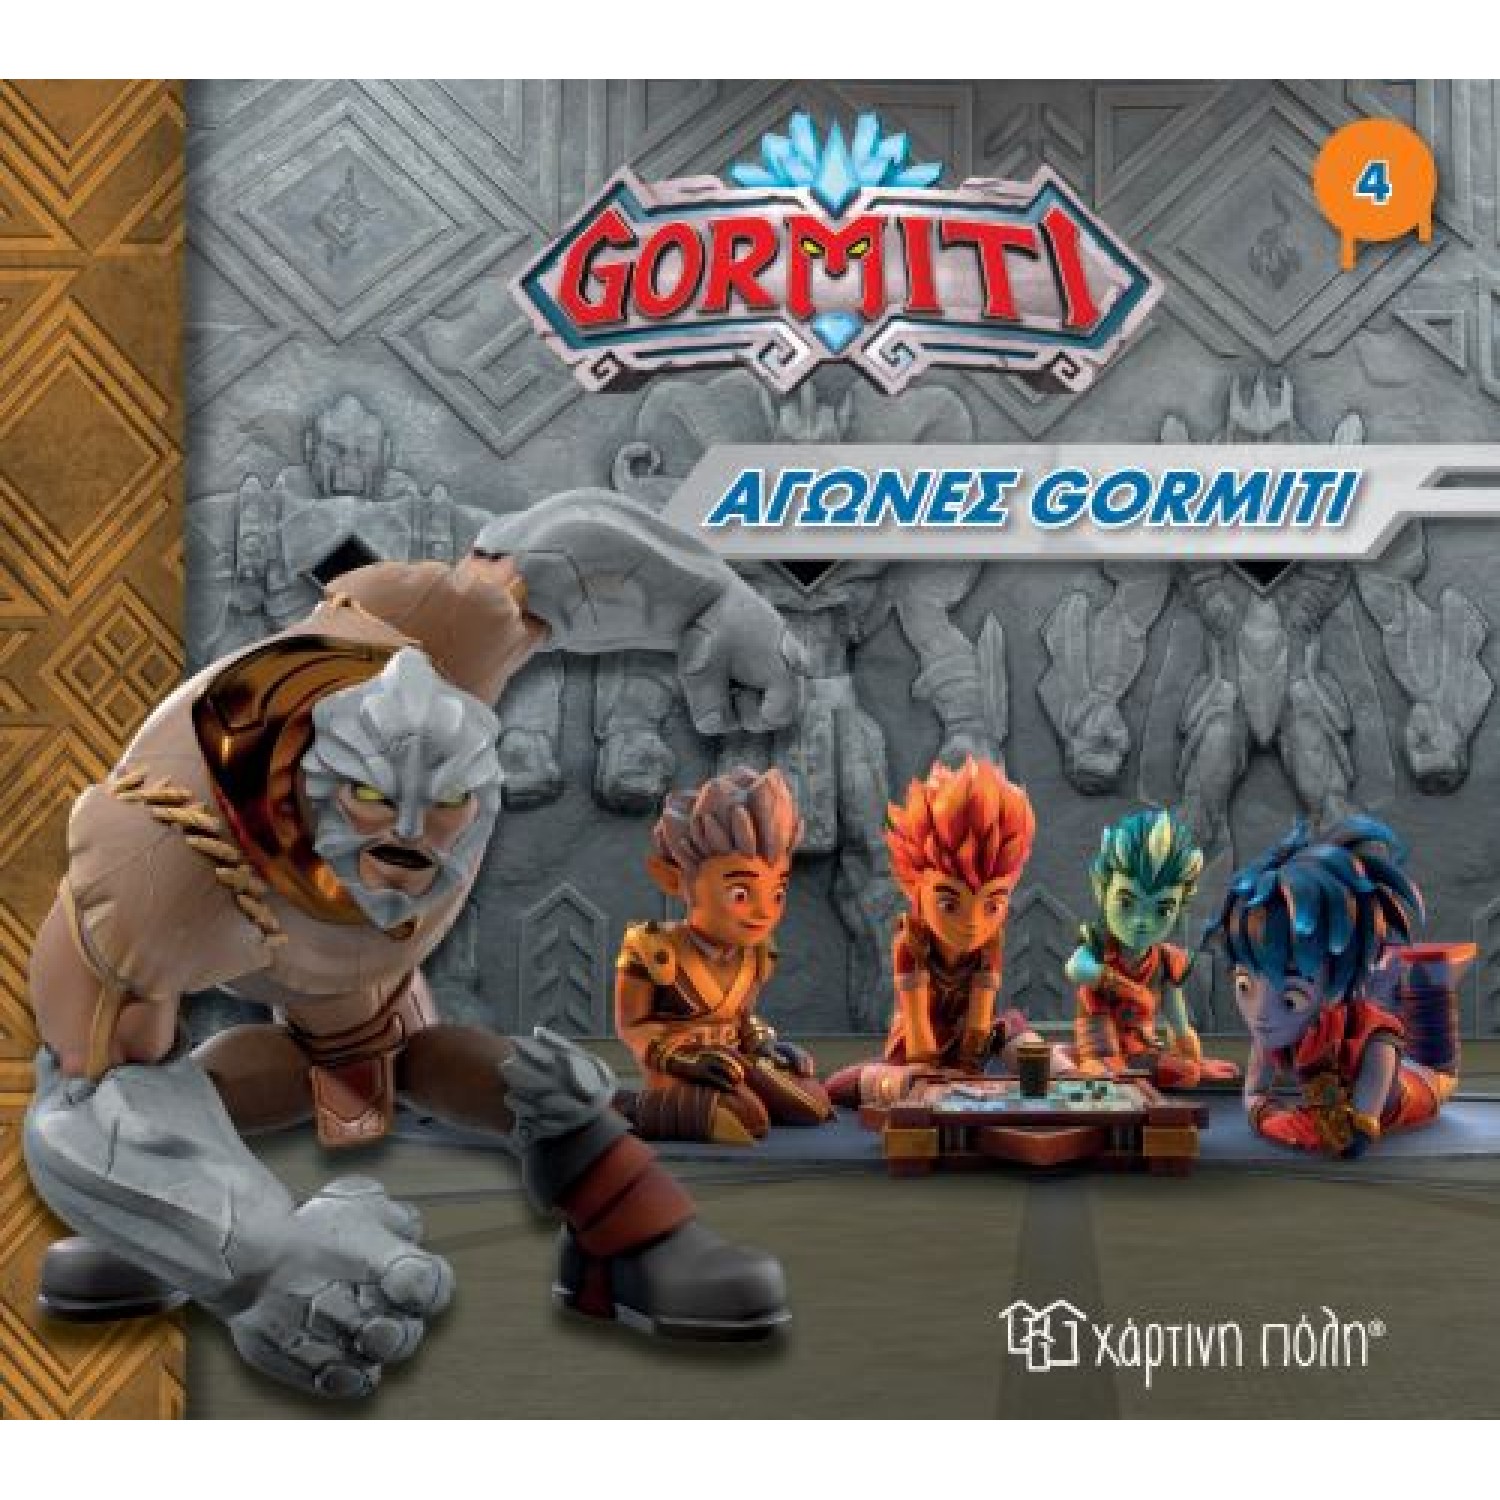 Gormiti 4 - αγώνες γκορμίτι